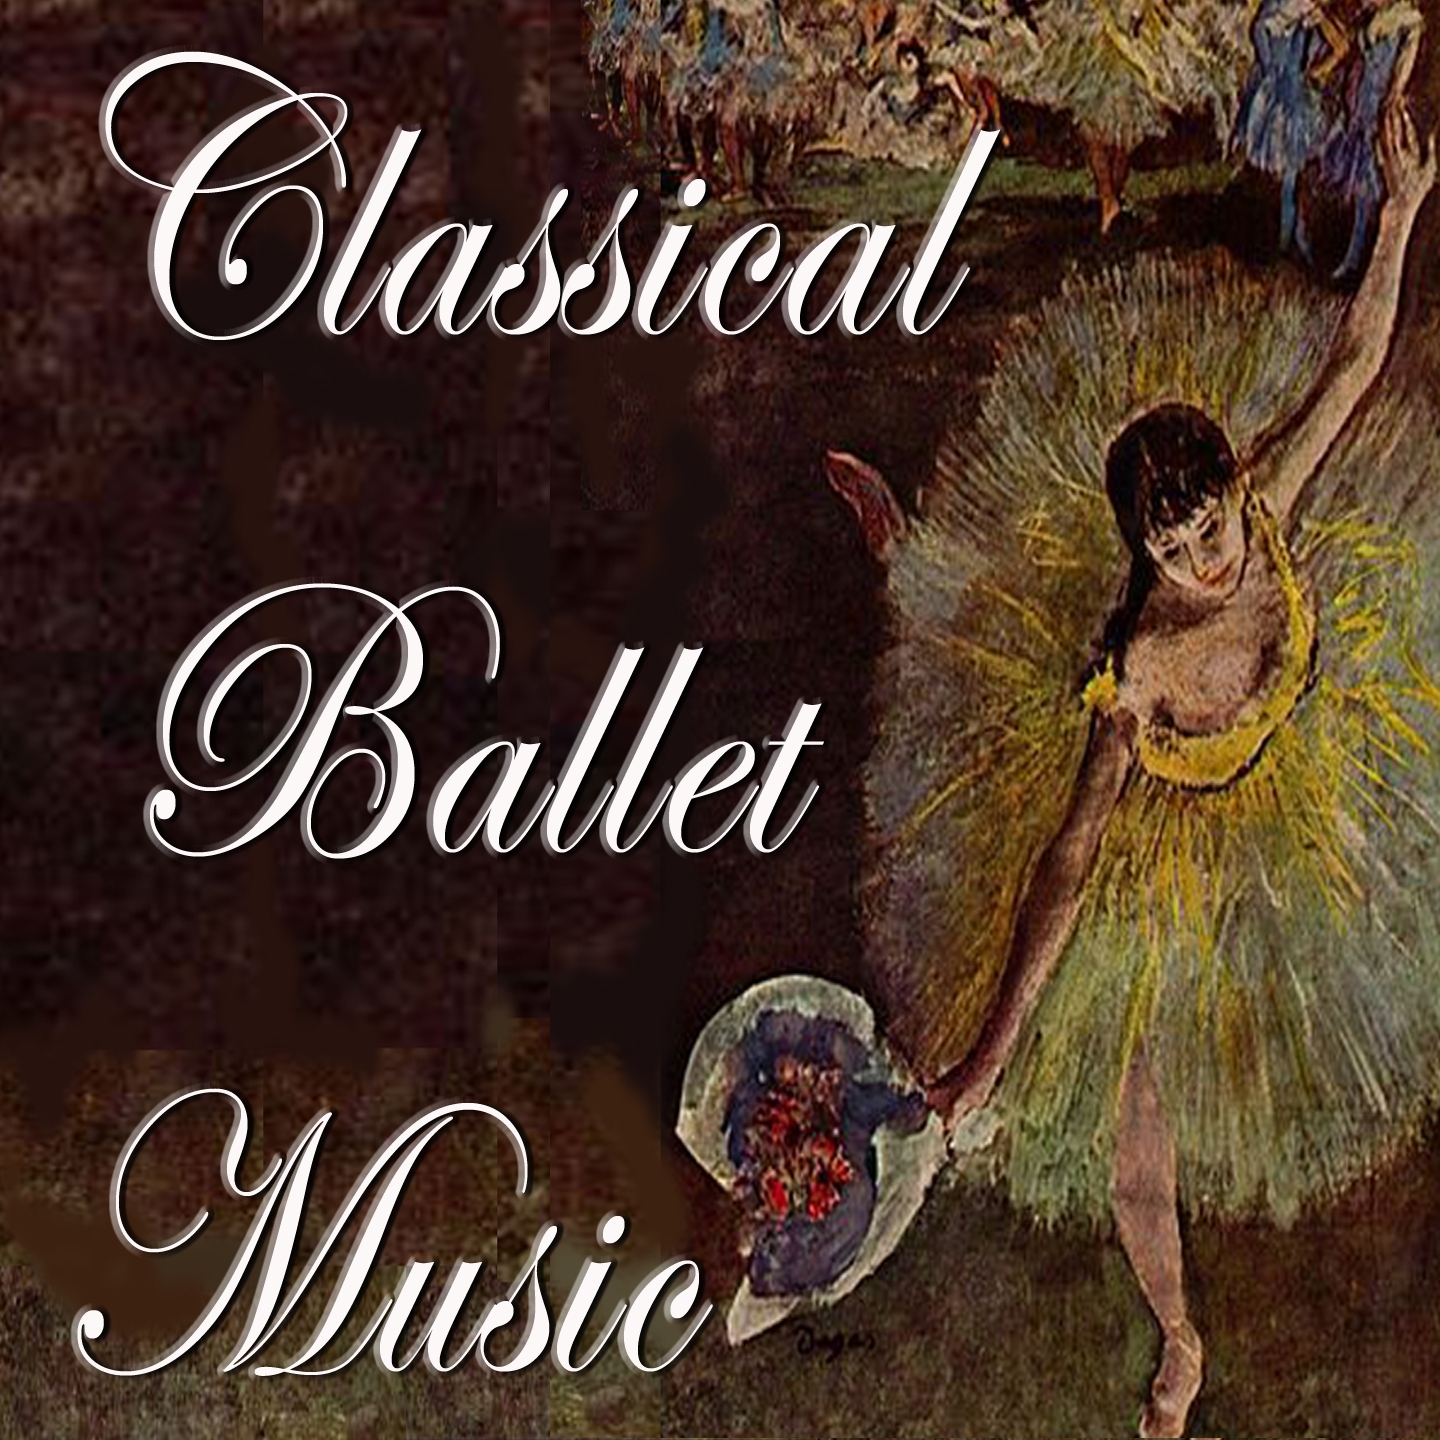 Classical Ballet Music